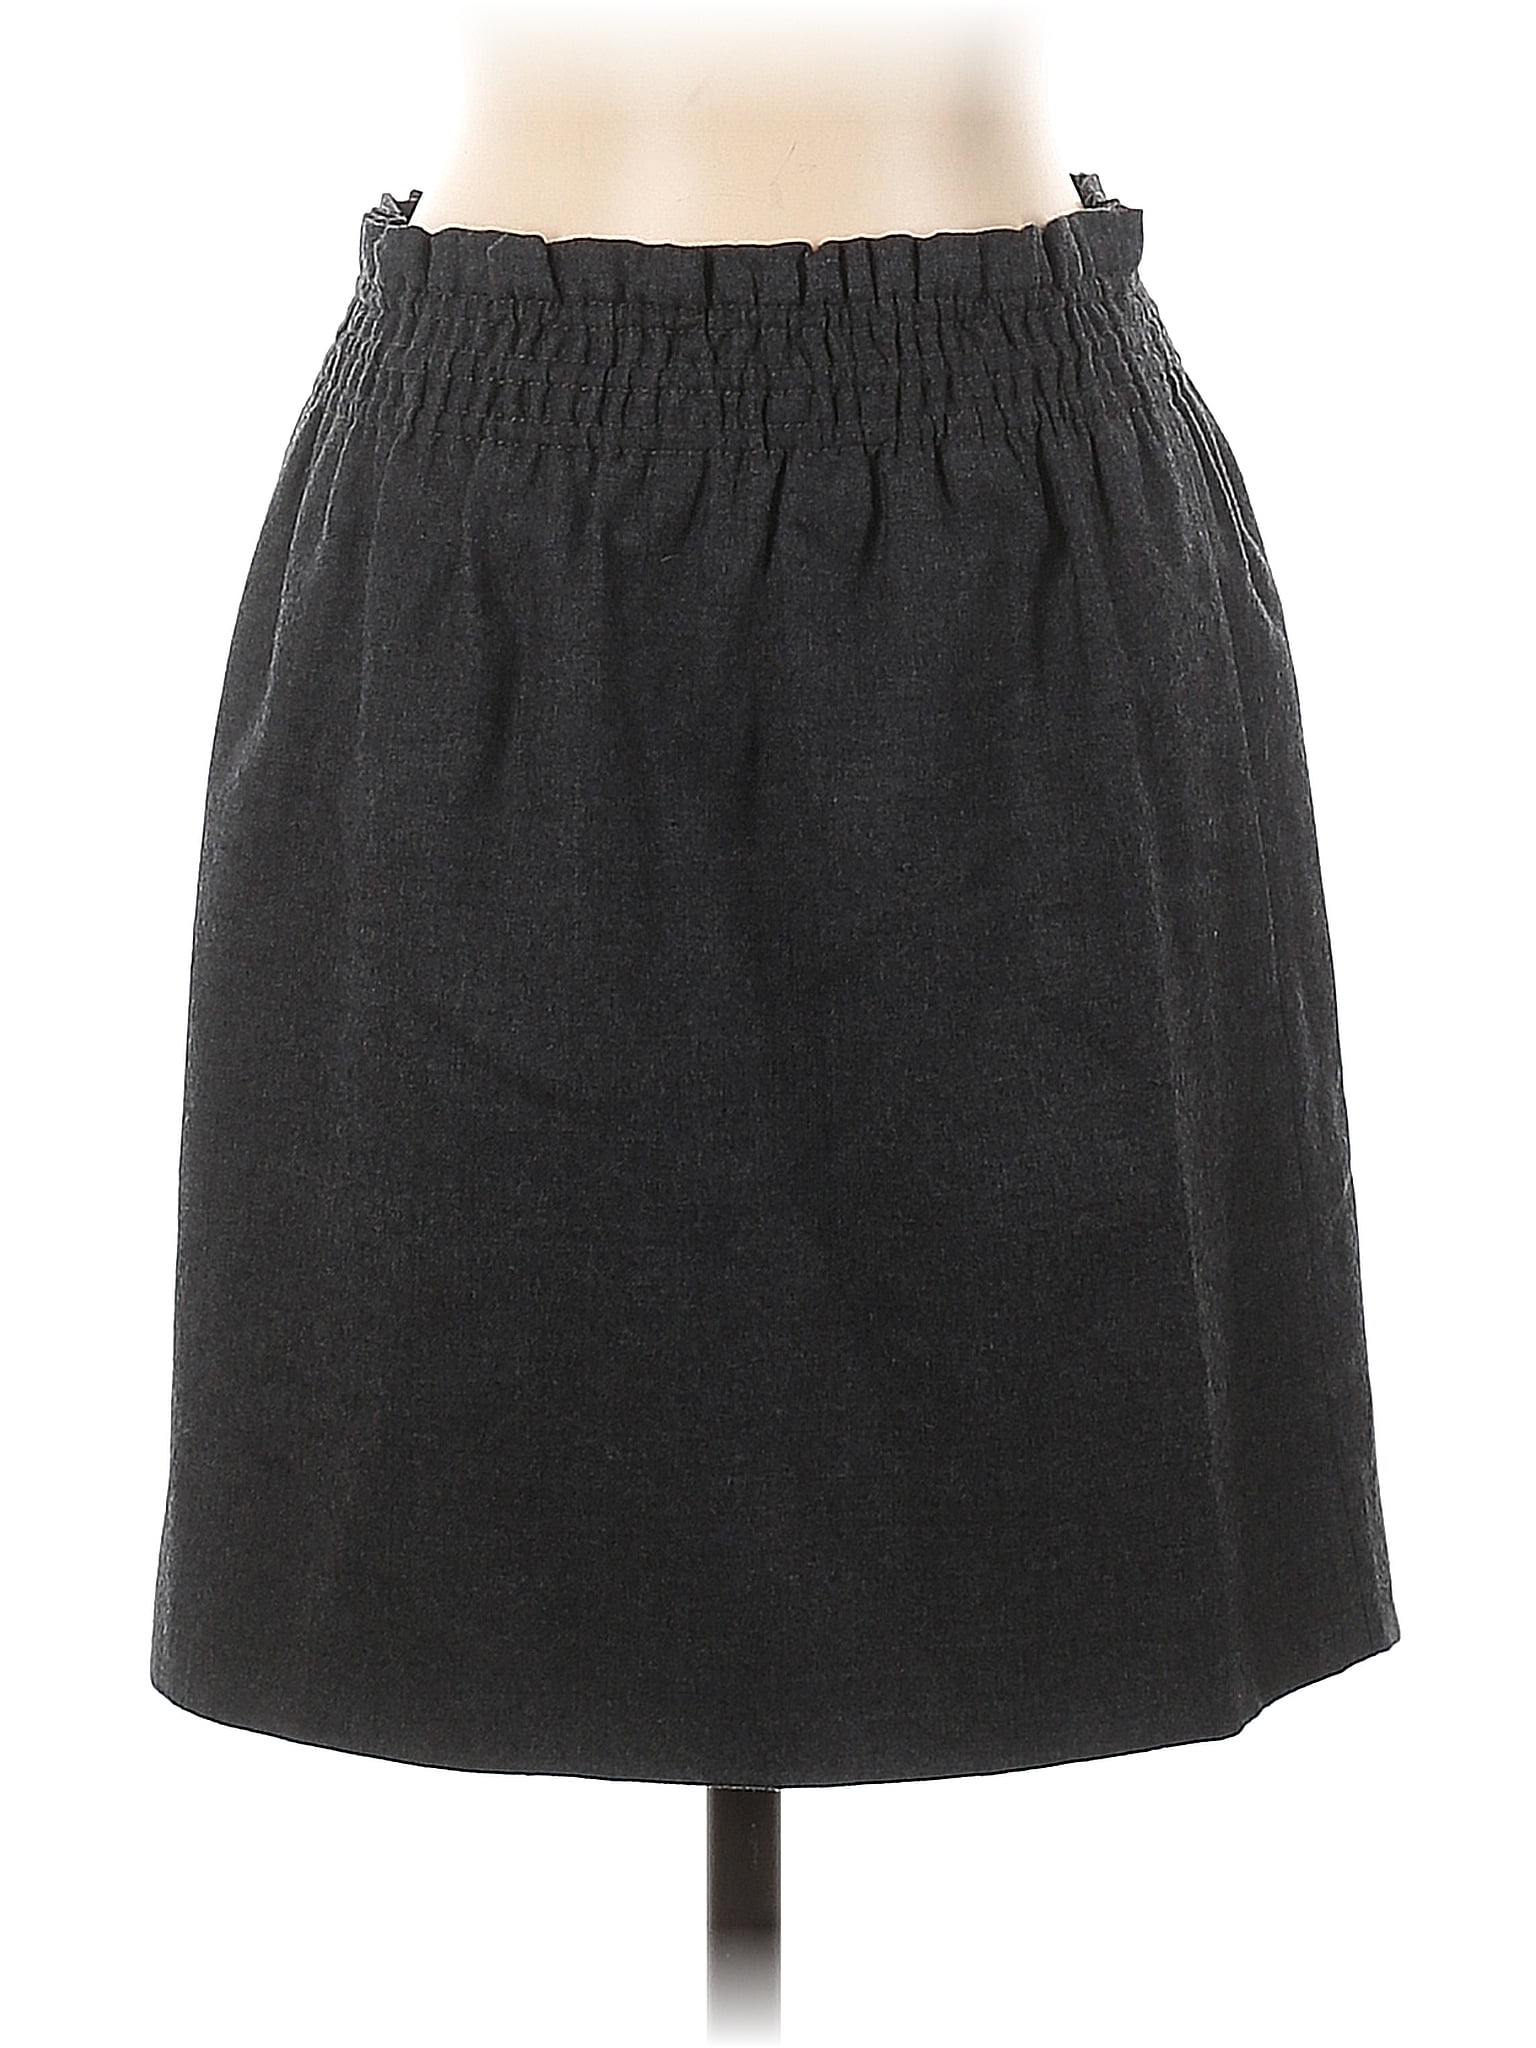 Lululemon Skirt Leggings 4-6 for Sale in Mountlake Terrace, WA - OfferUp